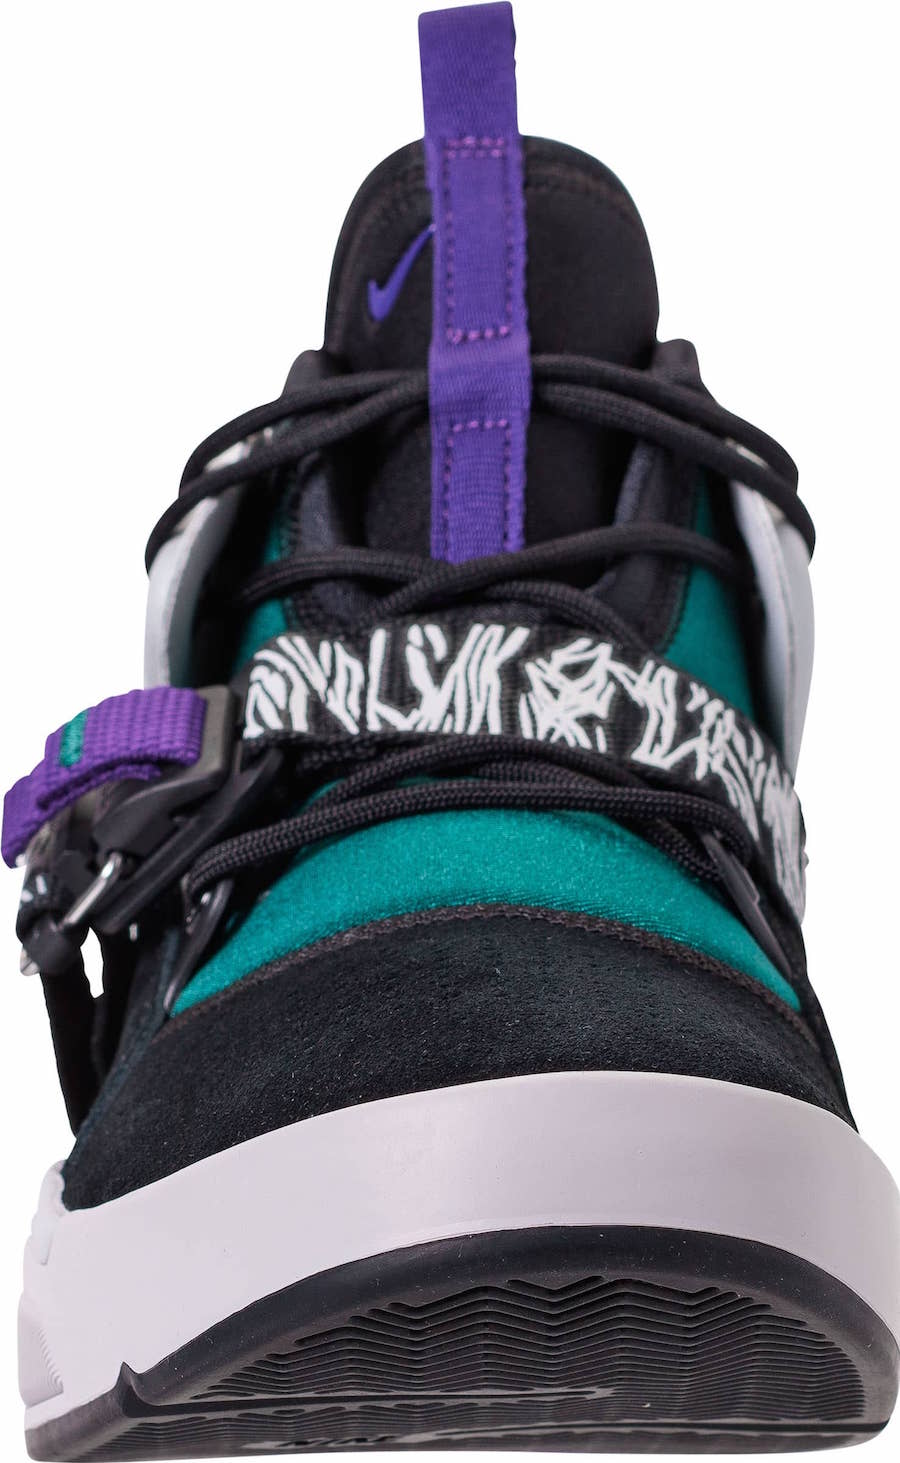 ５月１８日発売☆ Nike Air Force 270 “Carnivore” Black/Court Purple-Dark Atomic Teal  AH6772-005 (ナイキ エアフォース 270 ) – Sneaker Peace